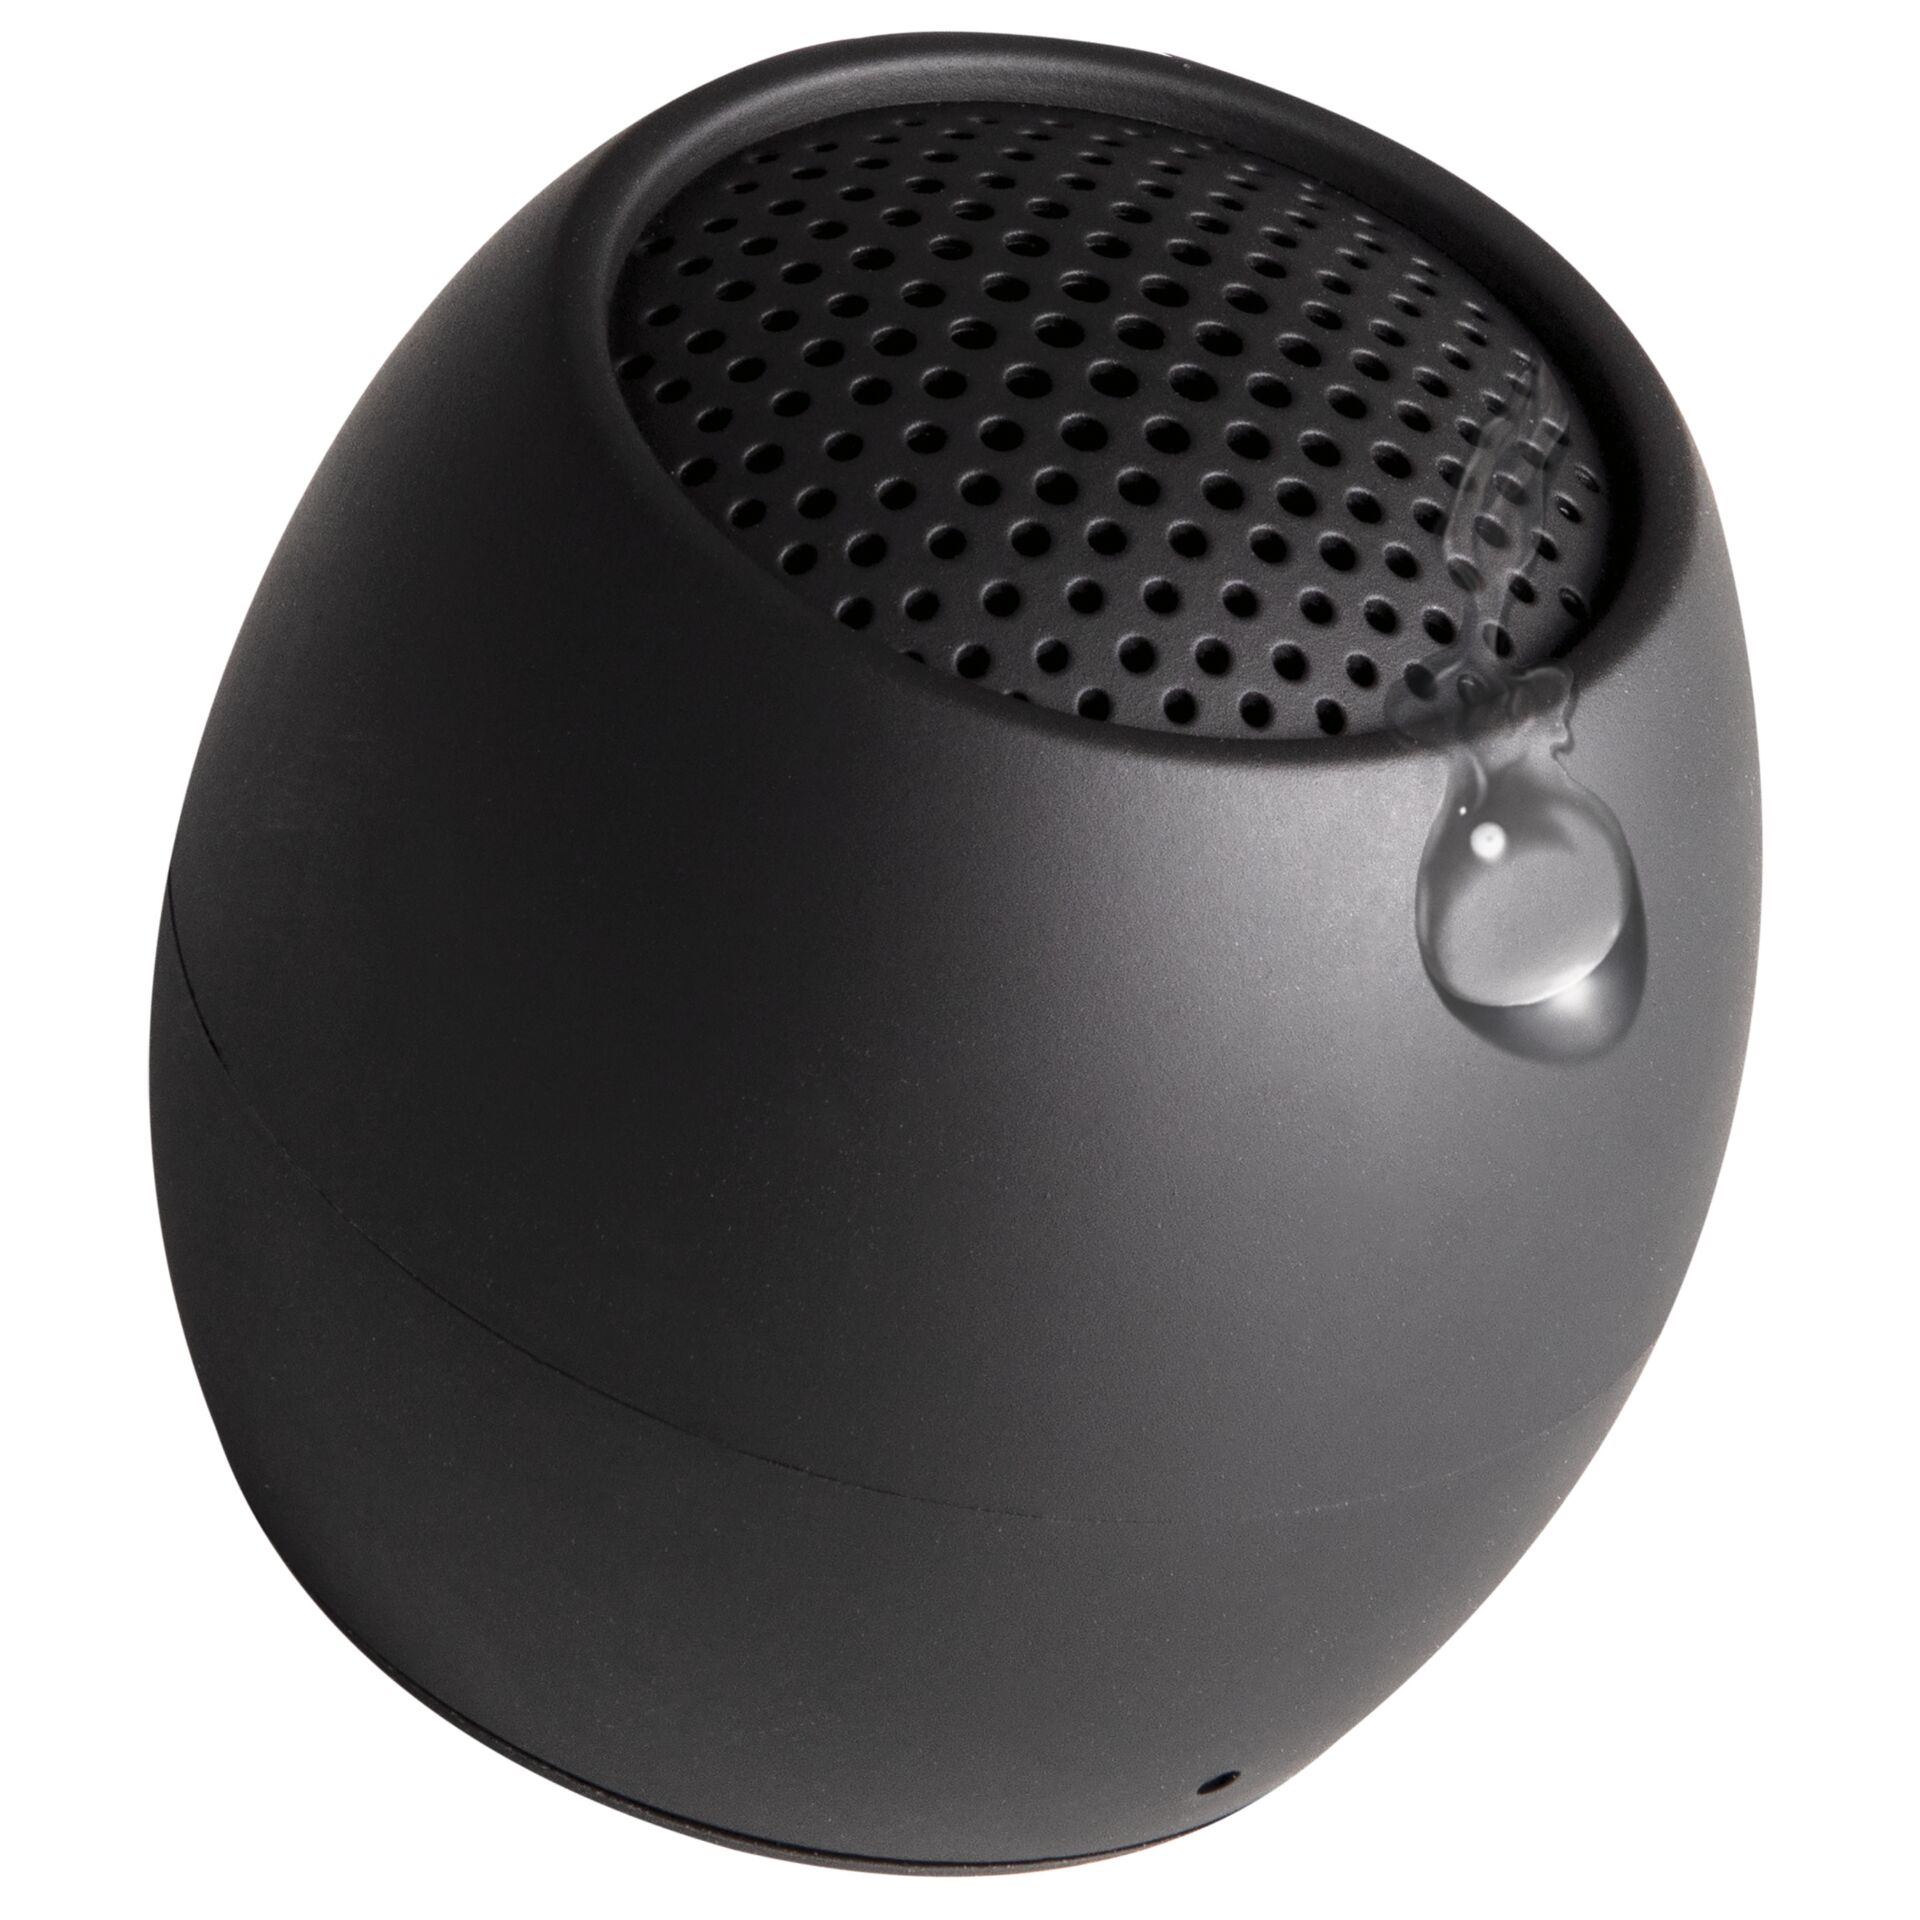 Boompods Zero Speaker Tragbarer Mono-Lautsprecher Schwarz 3 W